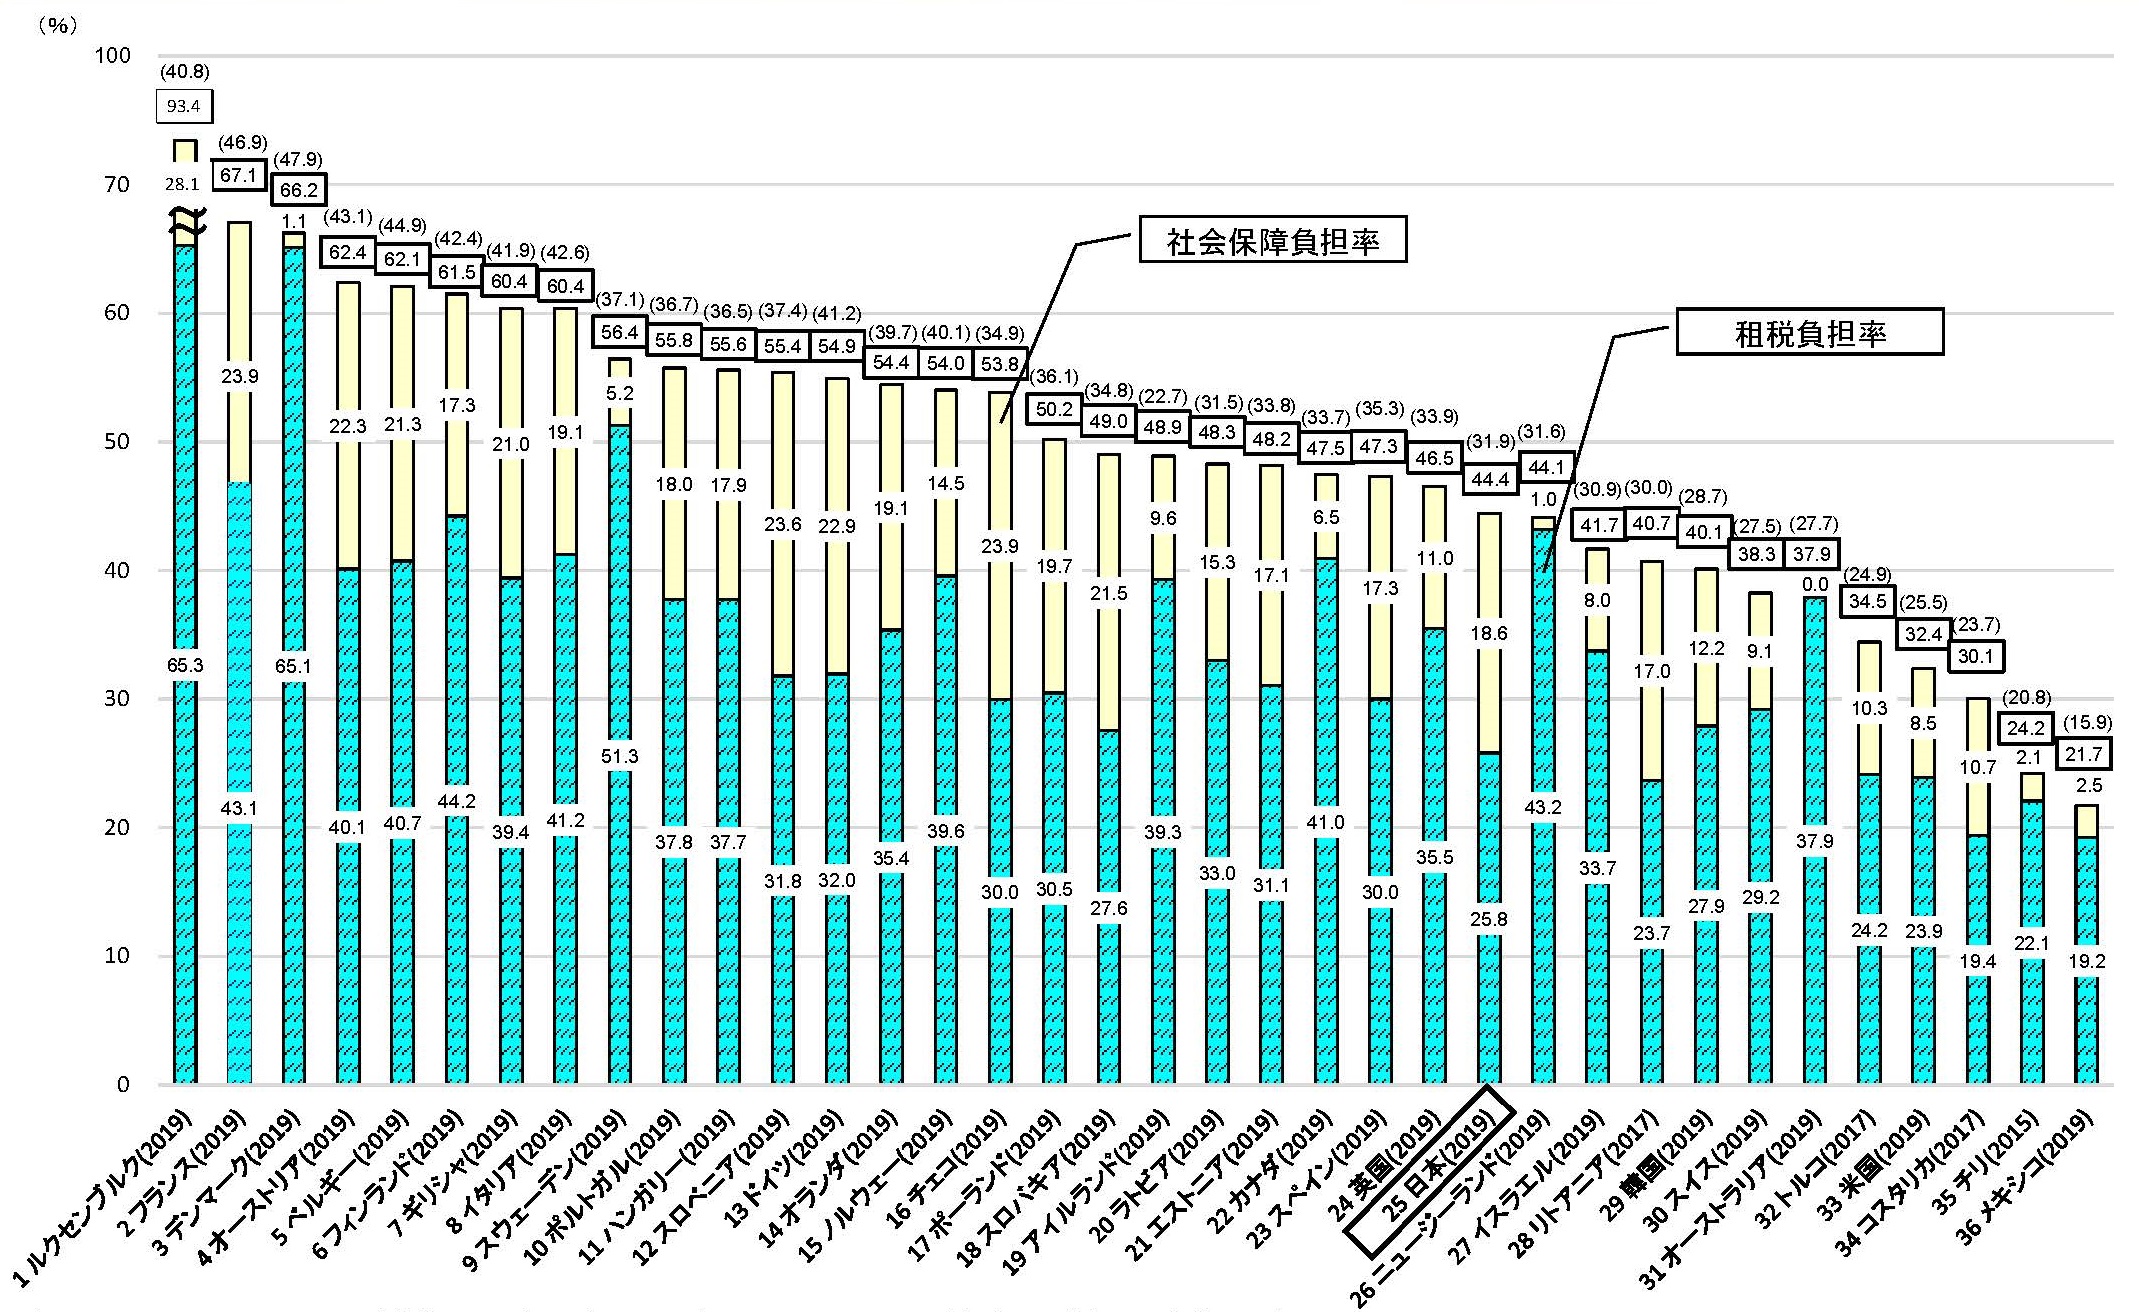 国民負担率の国際比較（OECD加盟35カ国）